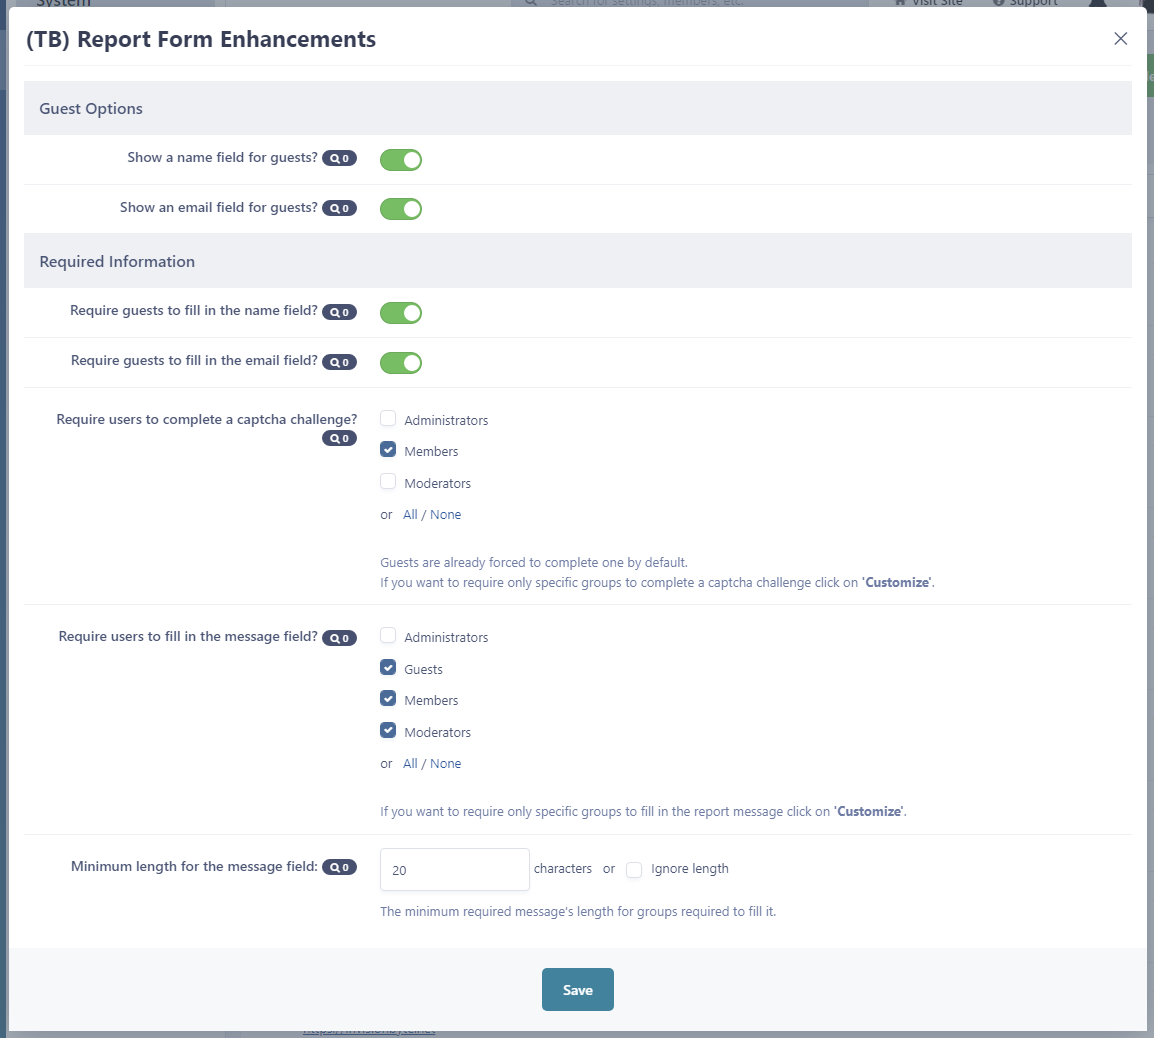 (TB) Report Form Enhancements